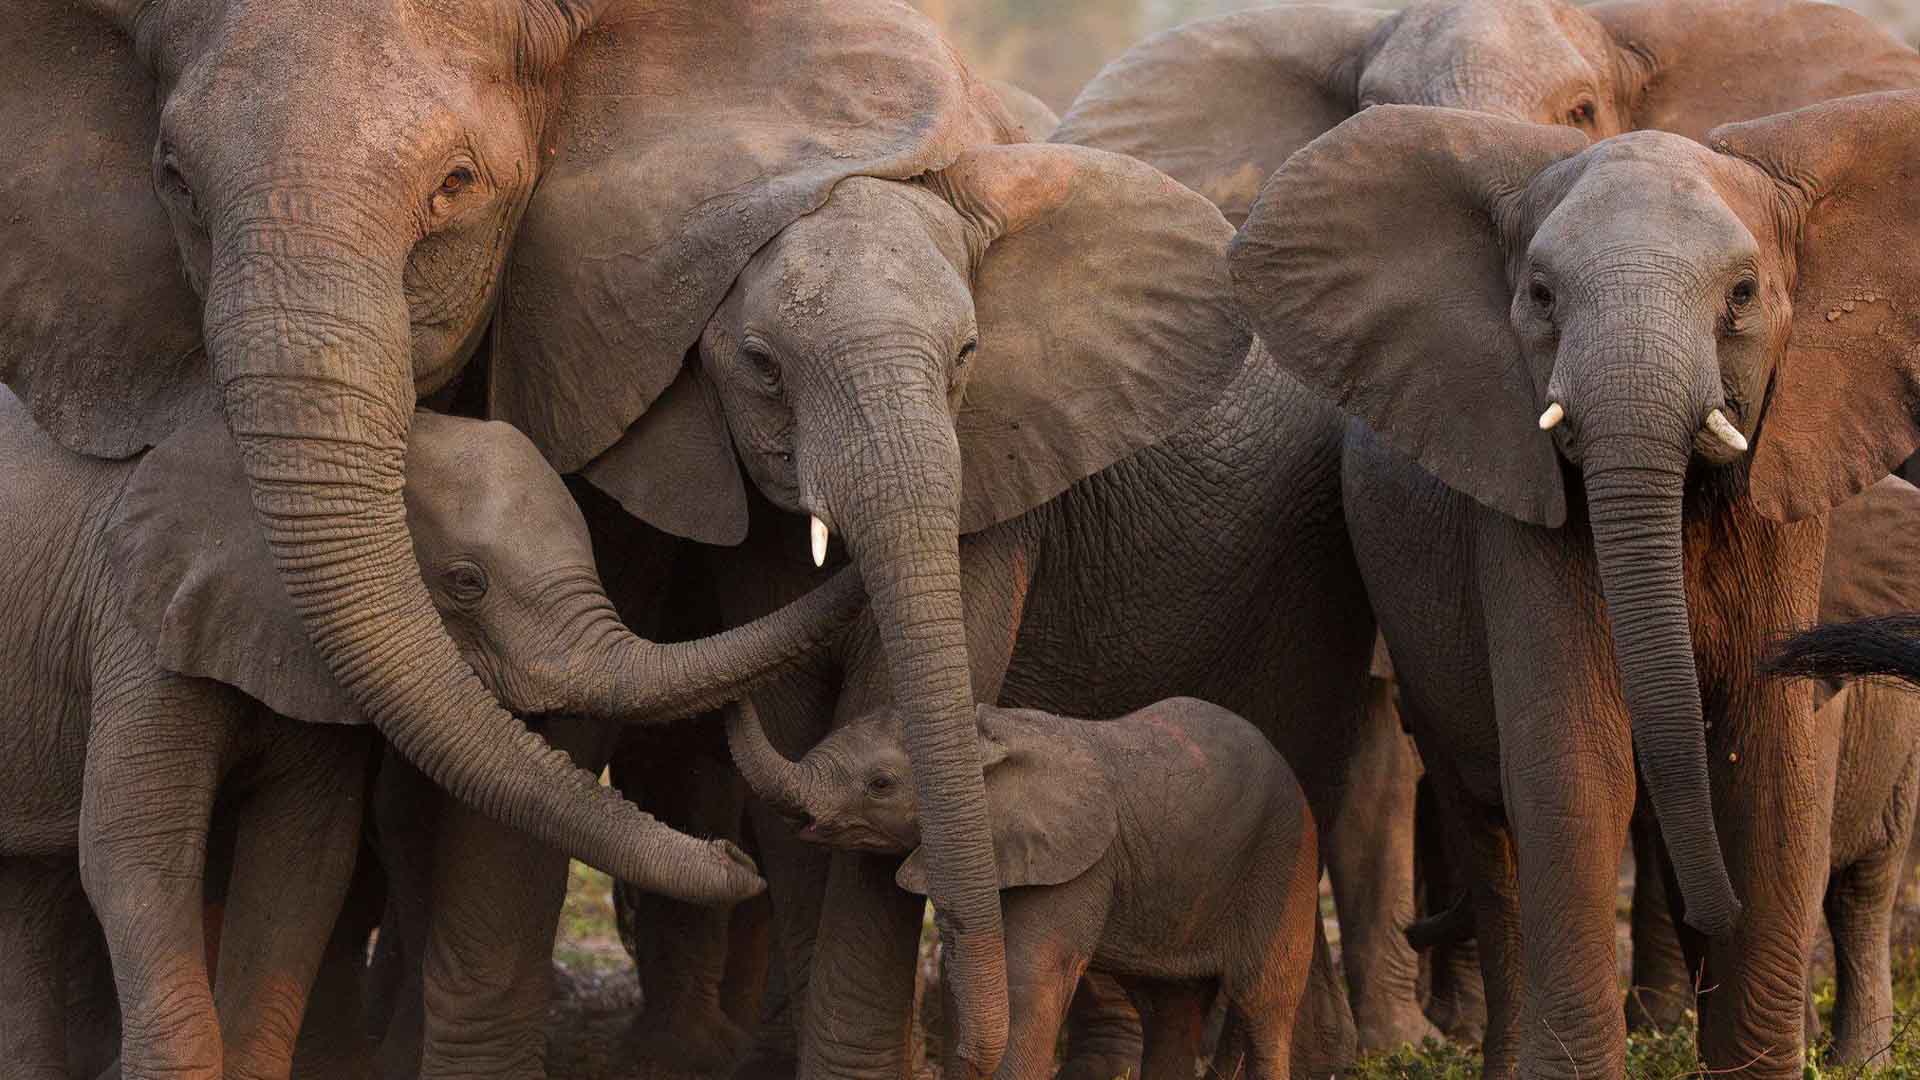 Los elefantes evolucionan y nacen sin colmillos en Mozambique tras décadas de caza furtiva